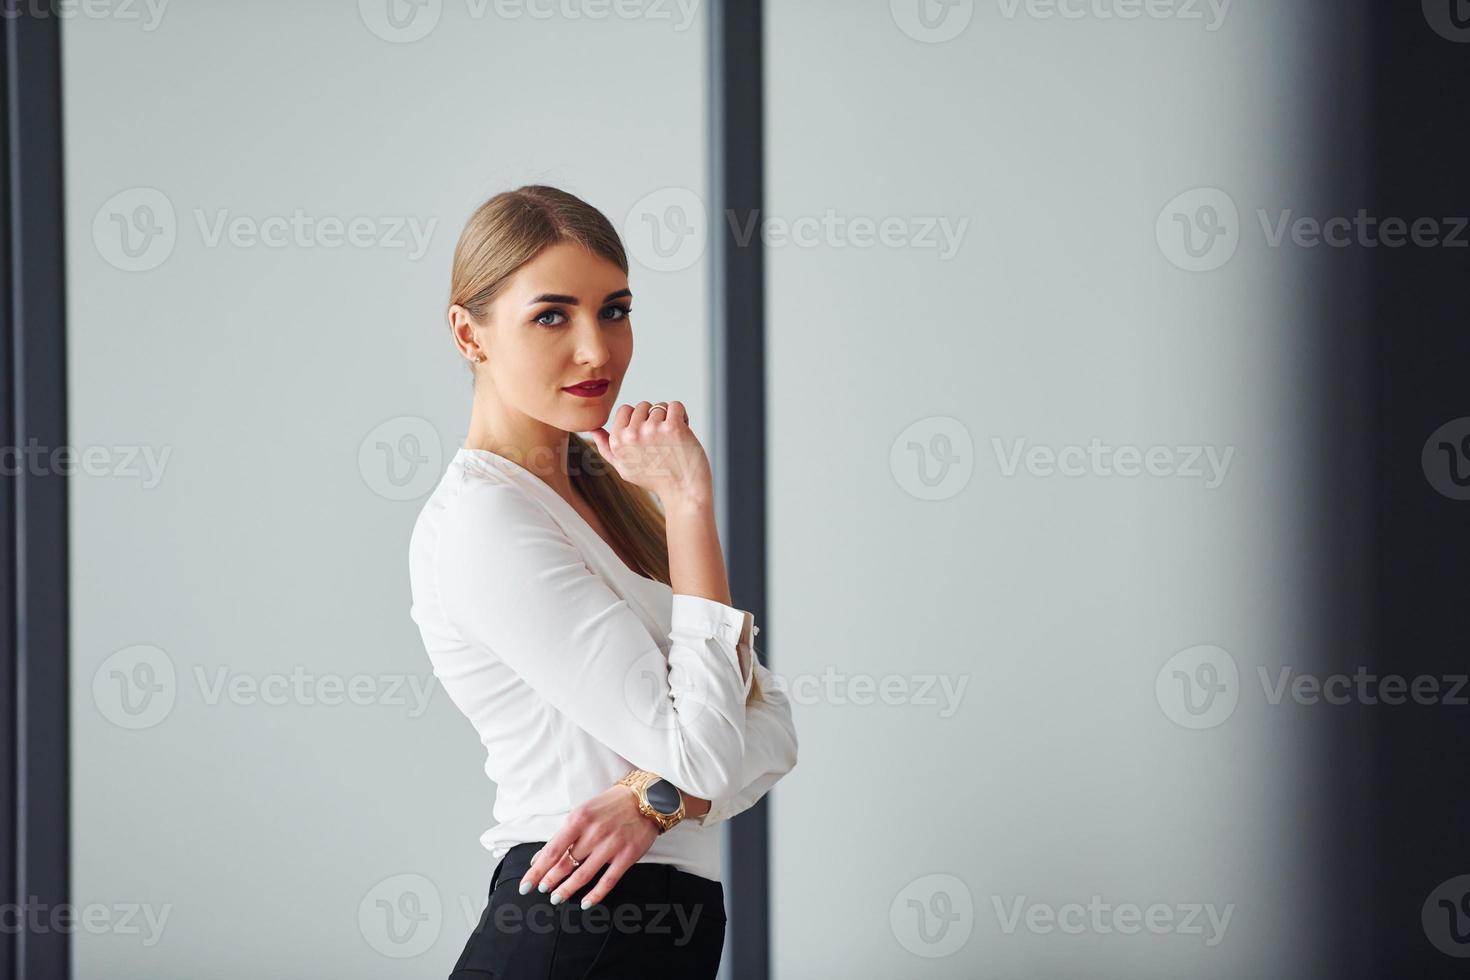 staand tegen grijs achtergrond. jong volwassen vrouw in formeel kleren is binnenshuis in de kantoor foto